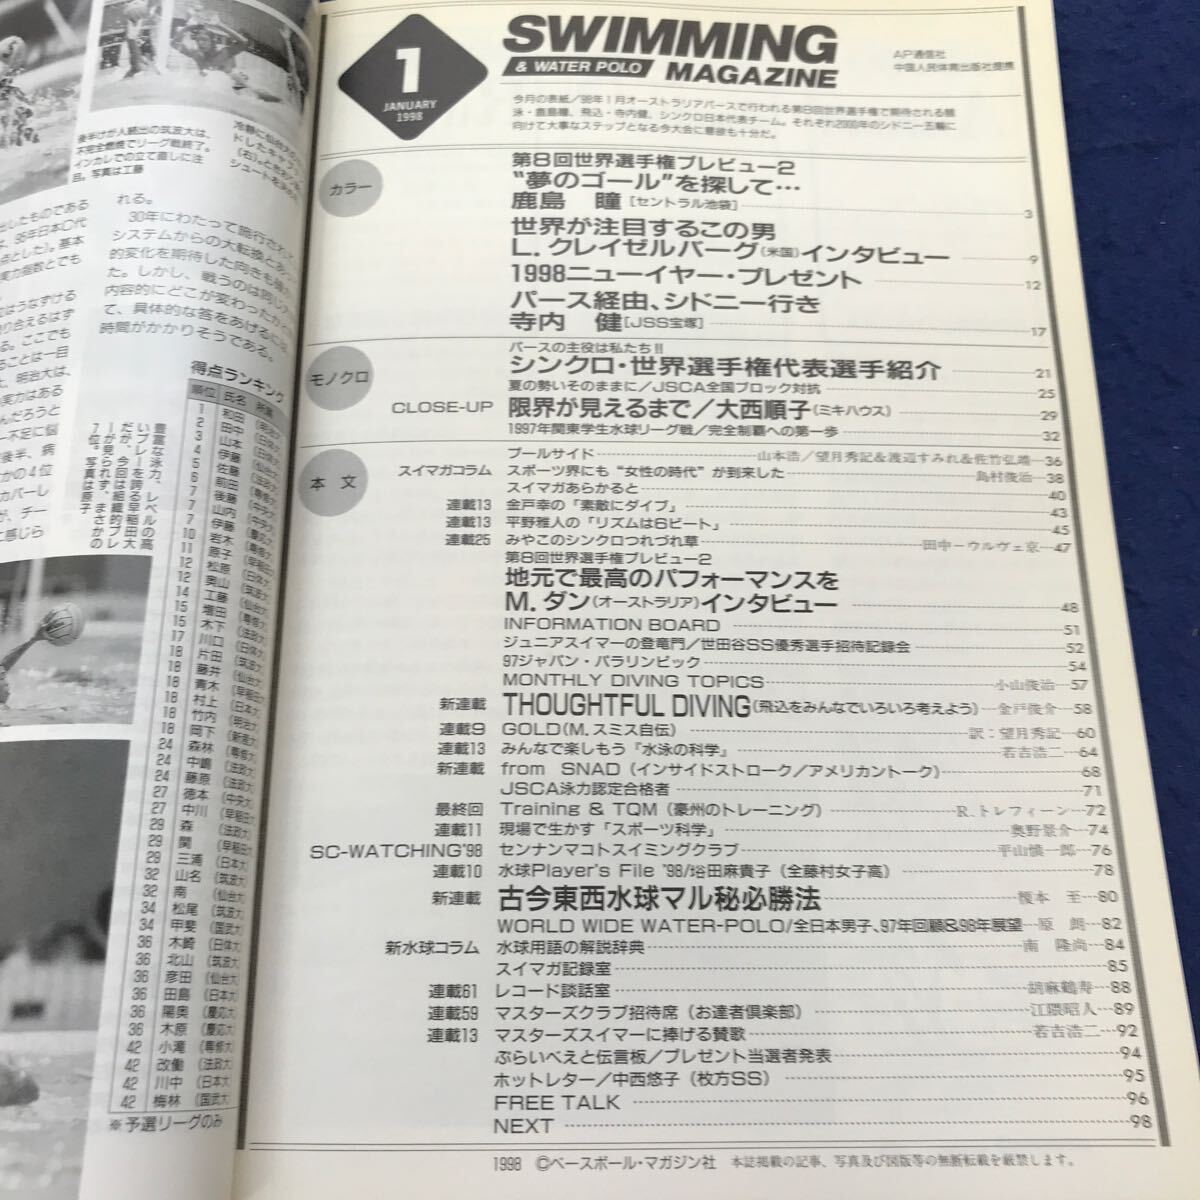 C05-133 SWIMMING MAGAZINE スイミング・マガジン1998年1月号 第8回世界選手権プレビュー2ほか ベースボール・マガジン社_画像3